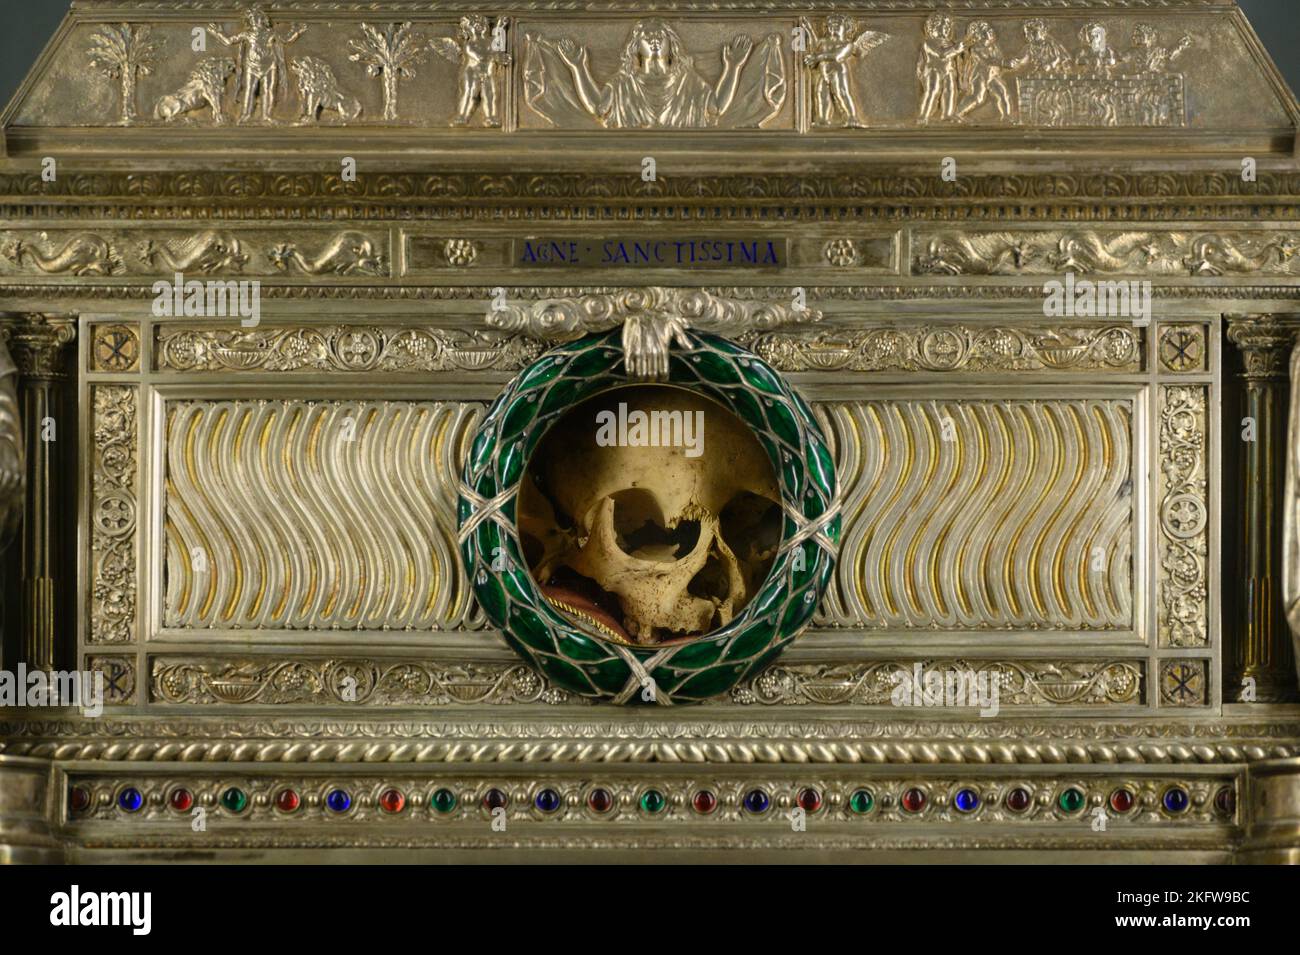 Roma. Italia. Sant'Agnese en Agone (Sant'Agnese en Piazza Navona). Relicario que contiene el cráneo de Santa Inés. Foto de stock